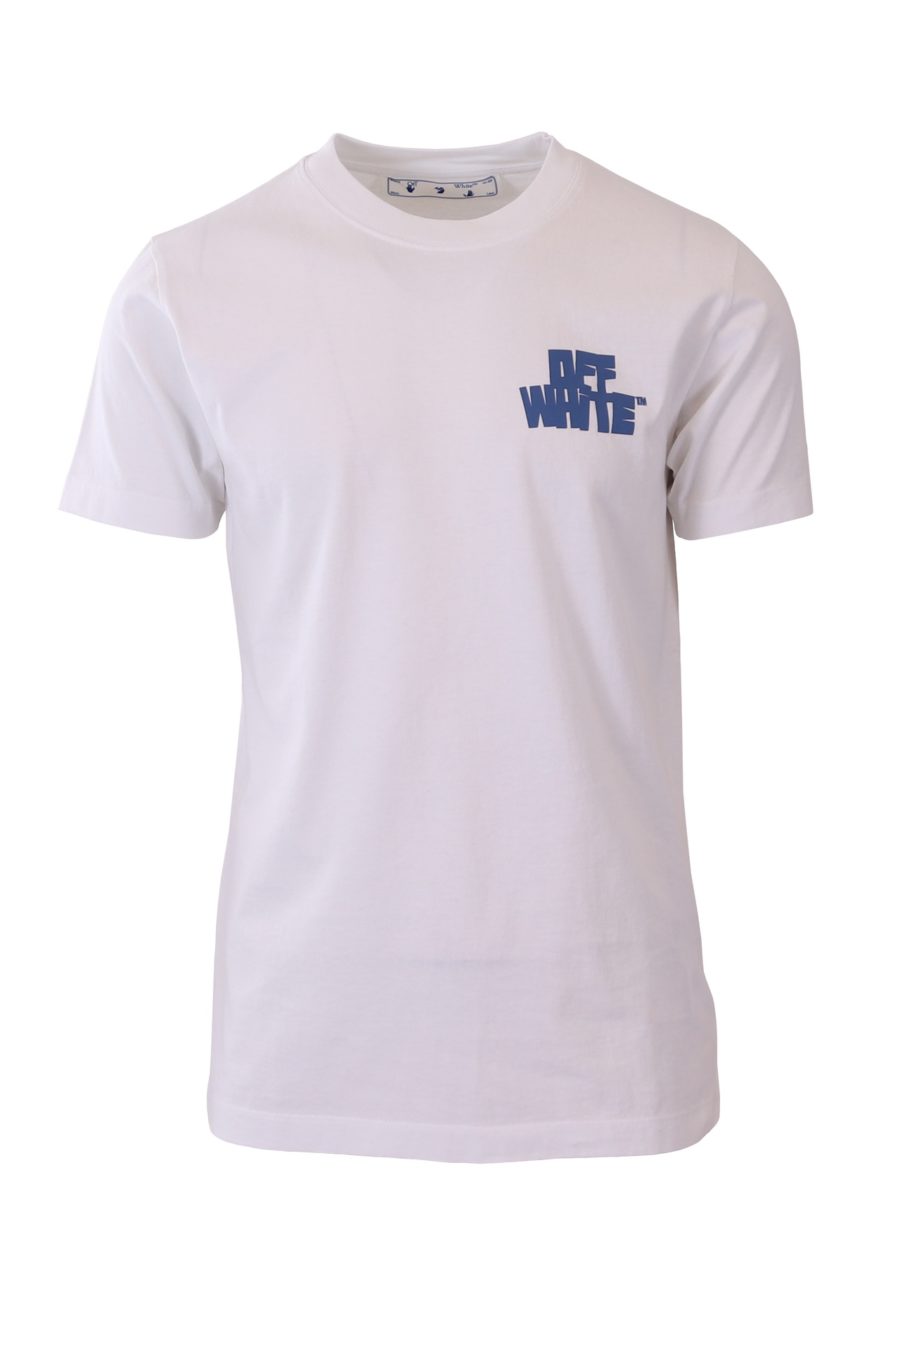 T-shirt Off-White branco azul estampado - 0505ba4dc0632876082a1700eb5faed2a08eabec